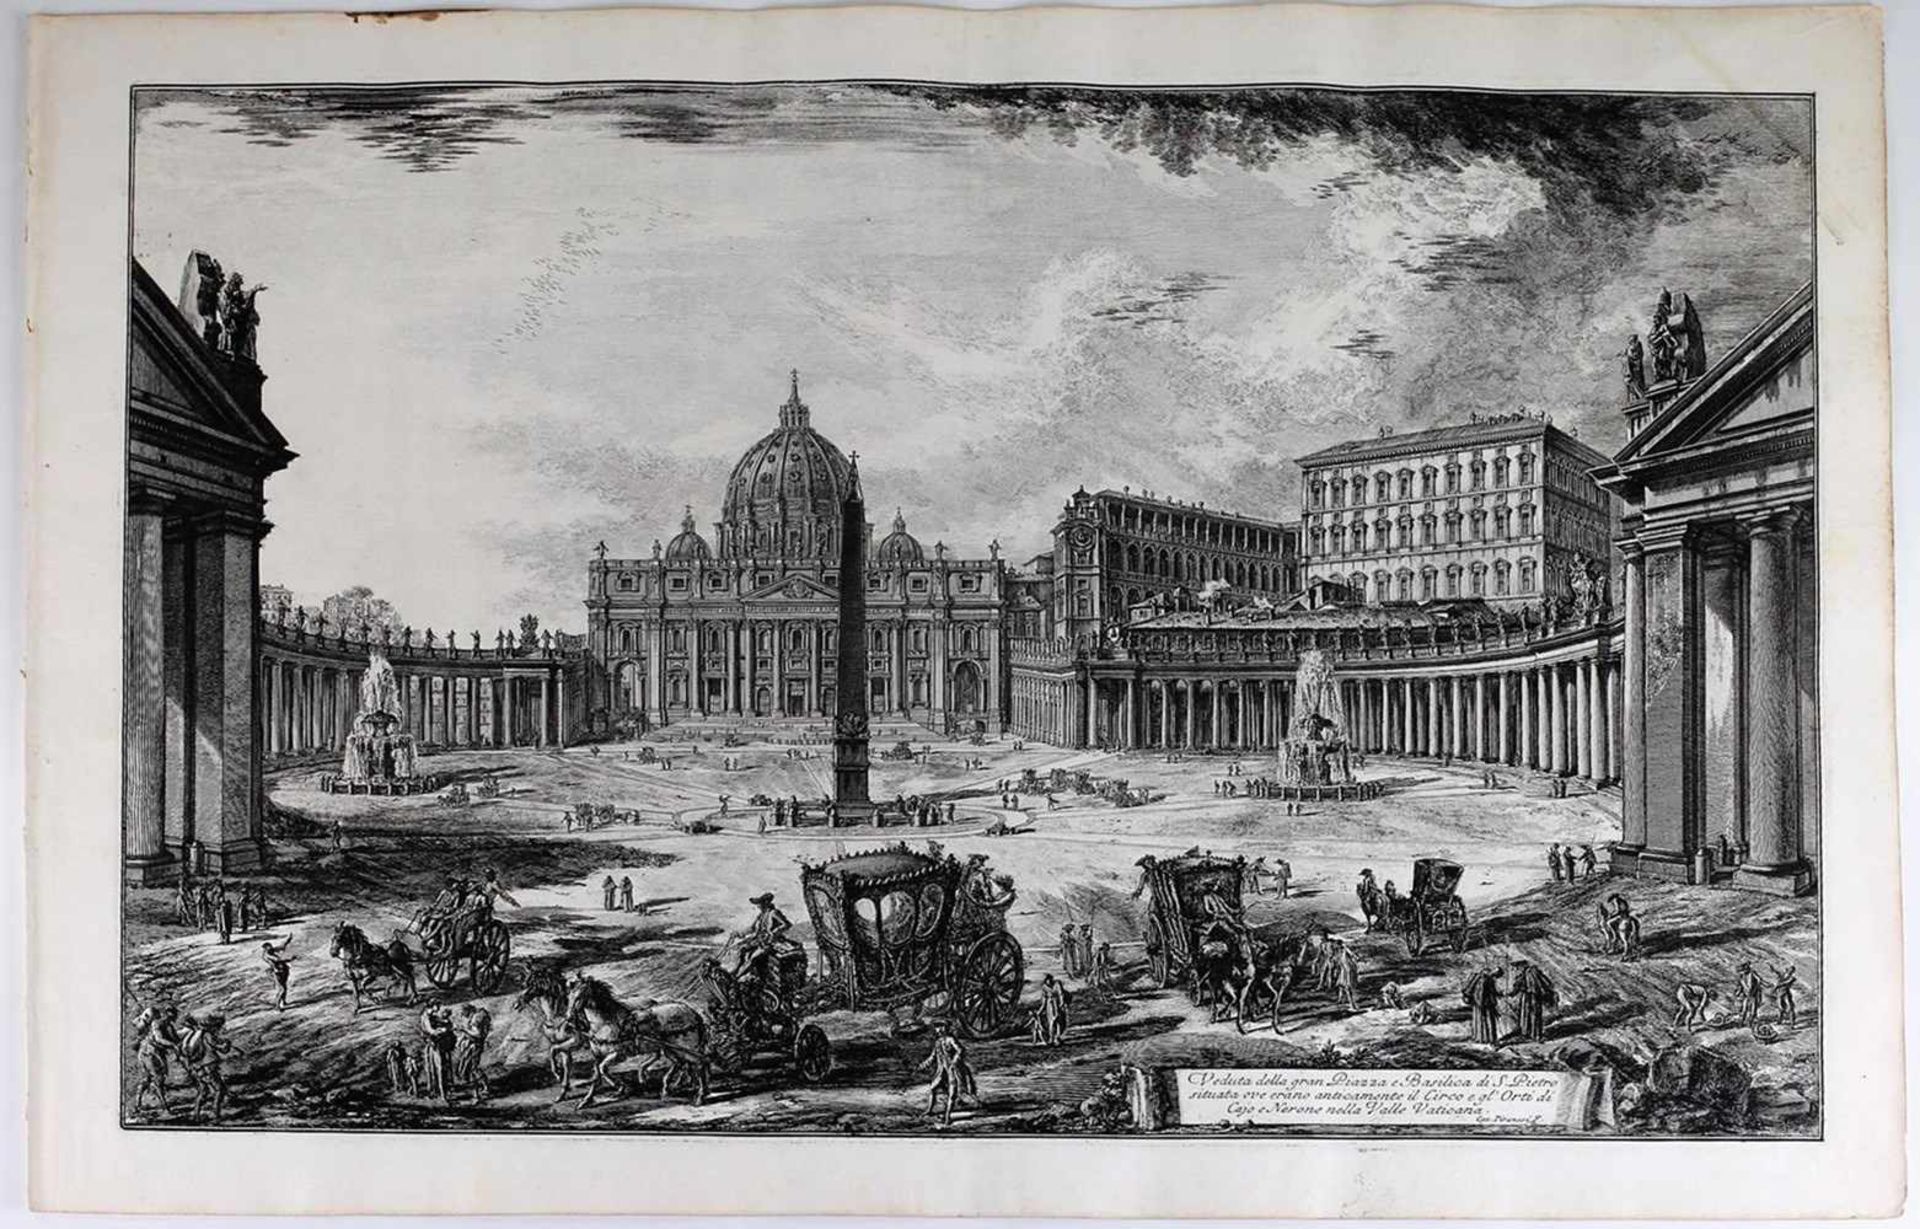 Piranesi, G.B. Veduta della gran Piazza a Basilica di S. Pietro und Veduta interna della Basilica di